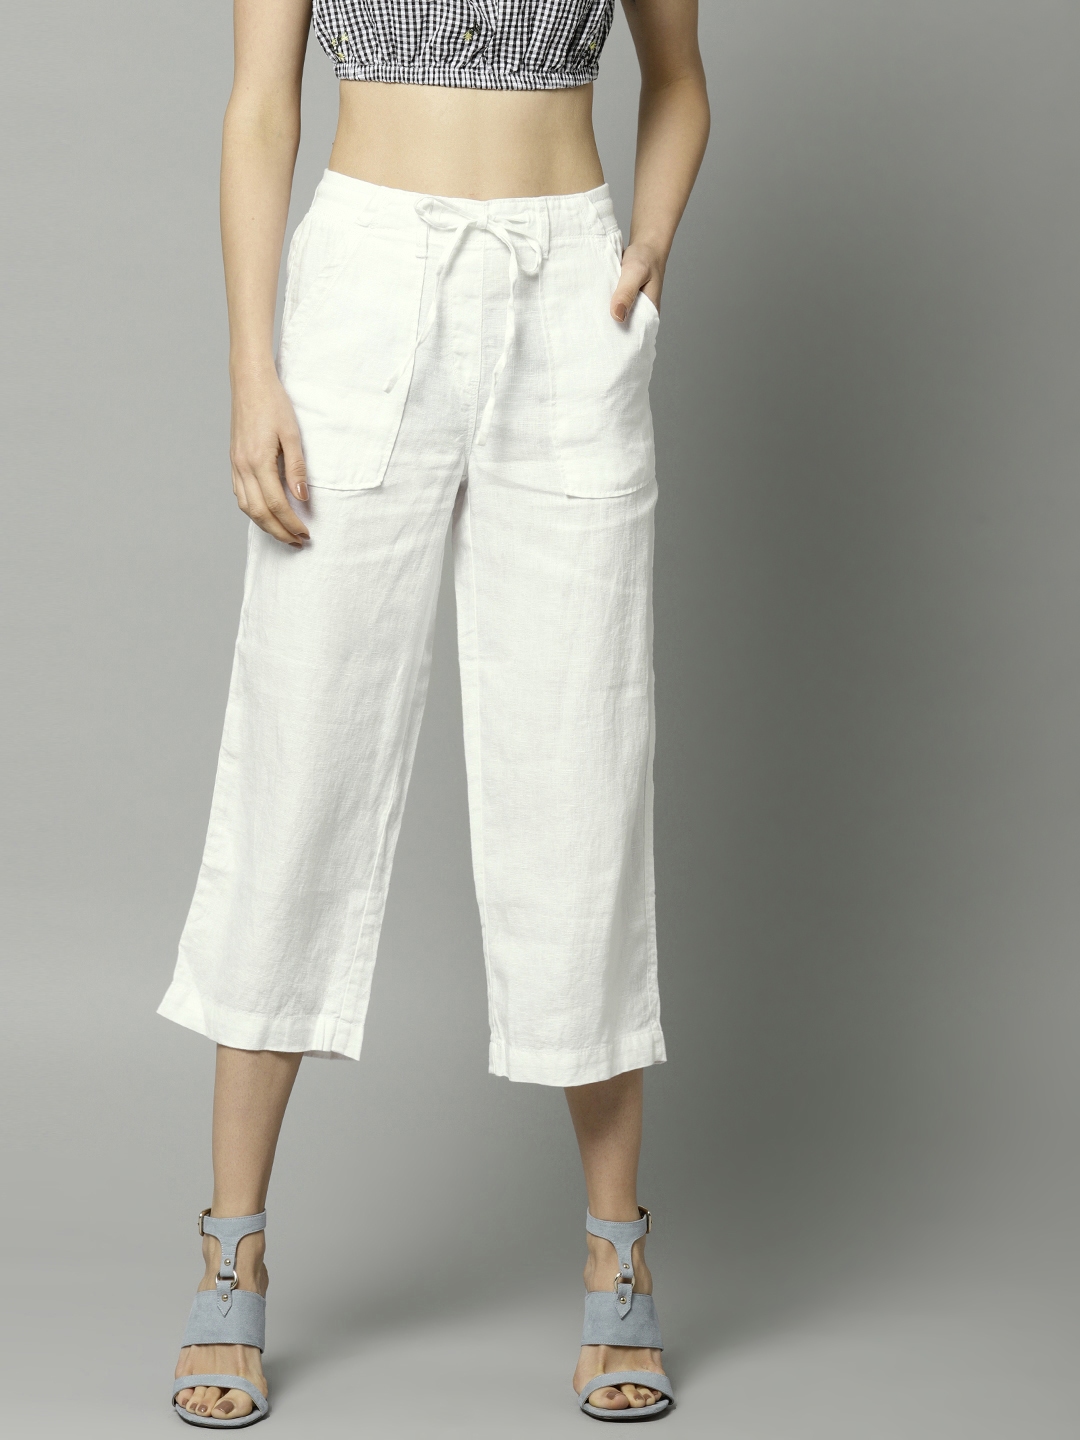 25 Best White linen trousers ideas  white linen trousers linen trousers  fashion